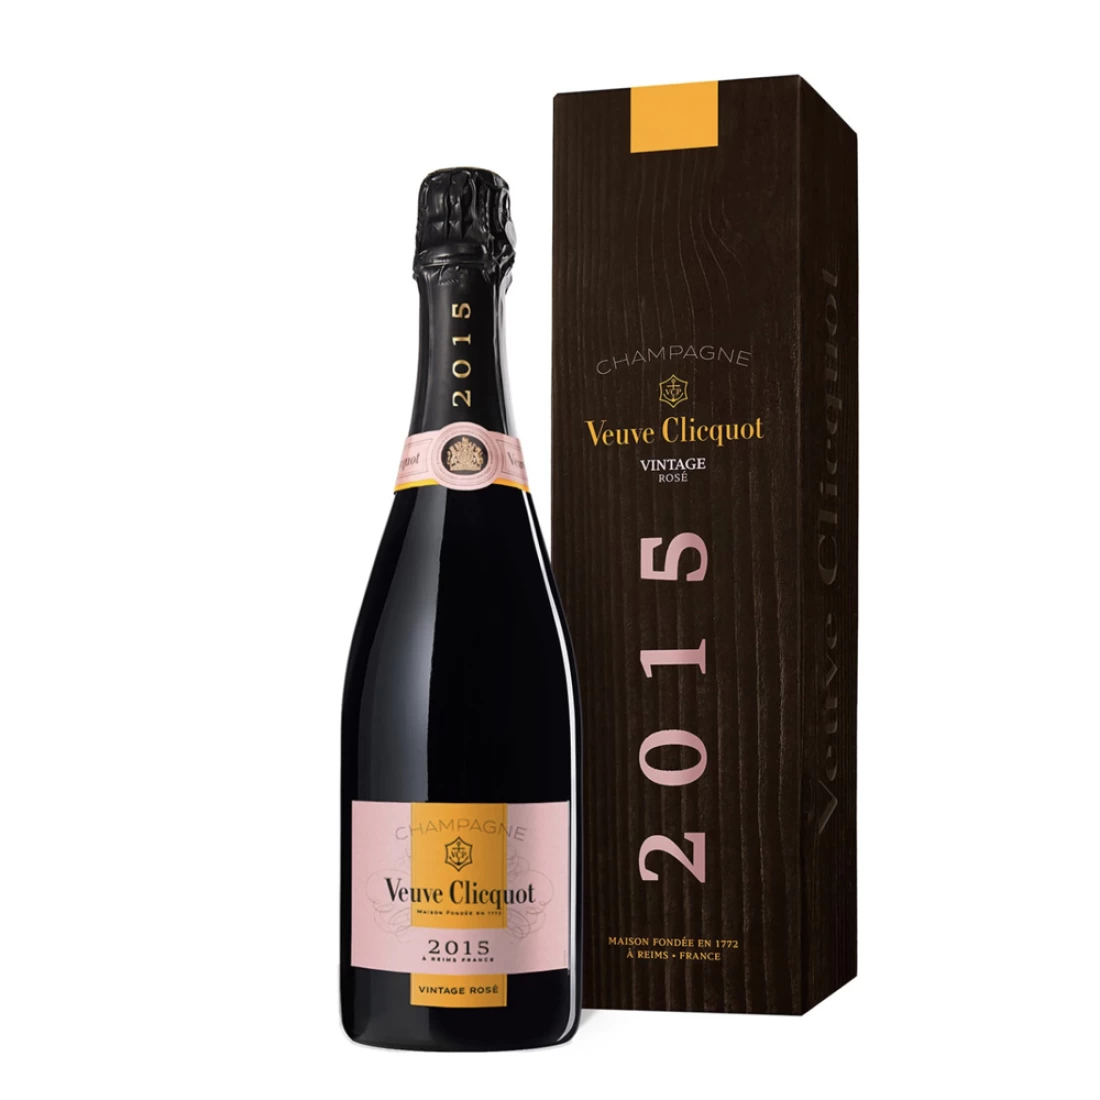 Veuve Clicquot Rose Vintage 2015 Champagne